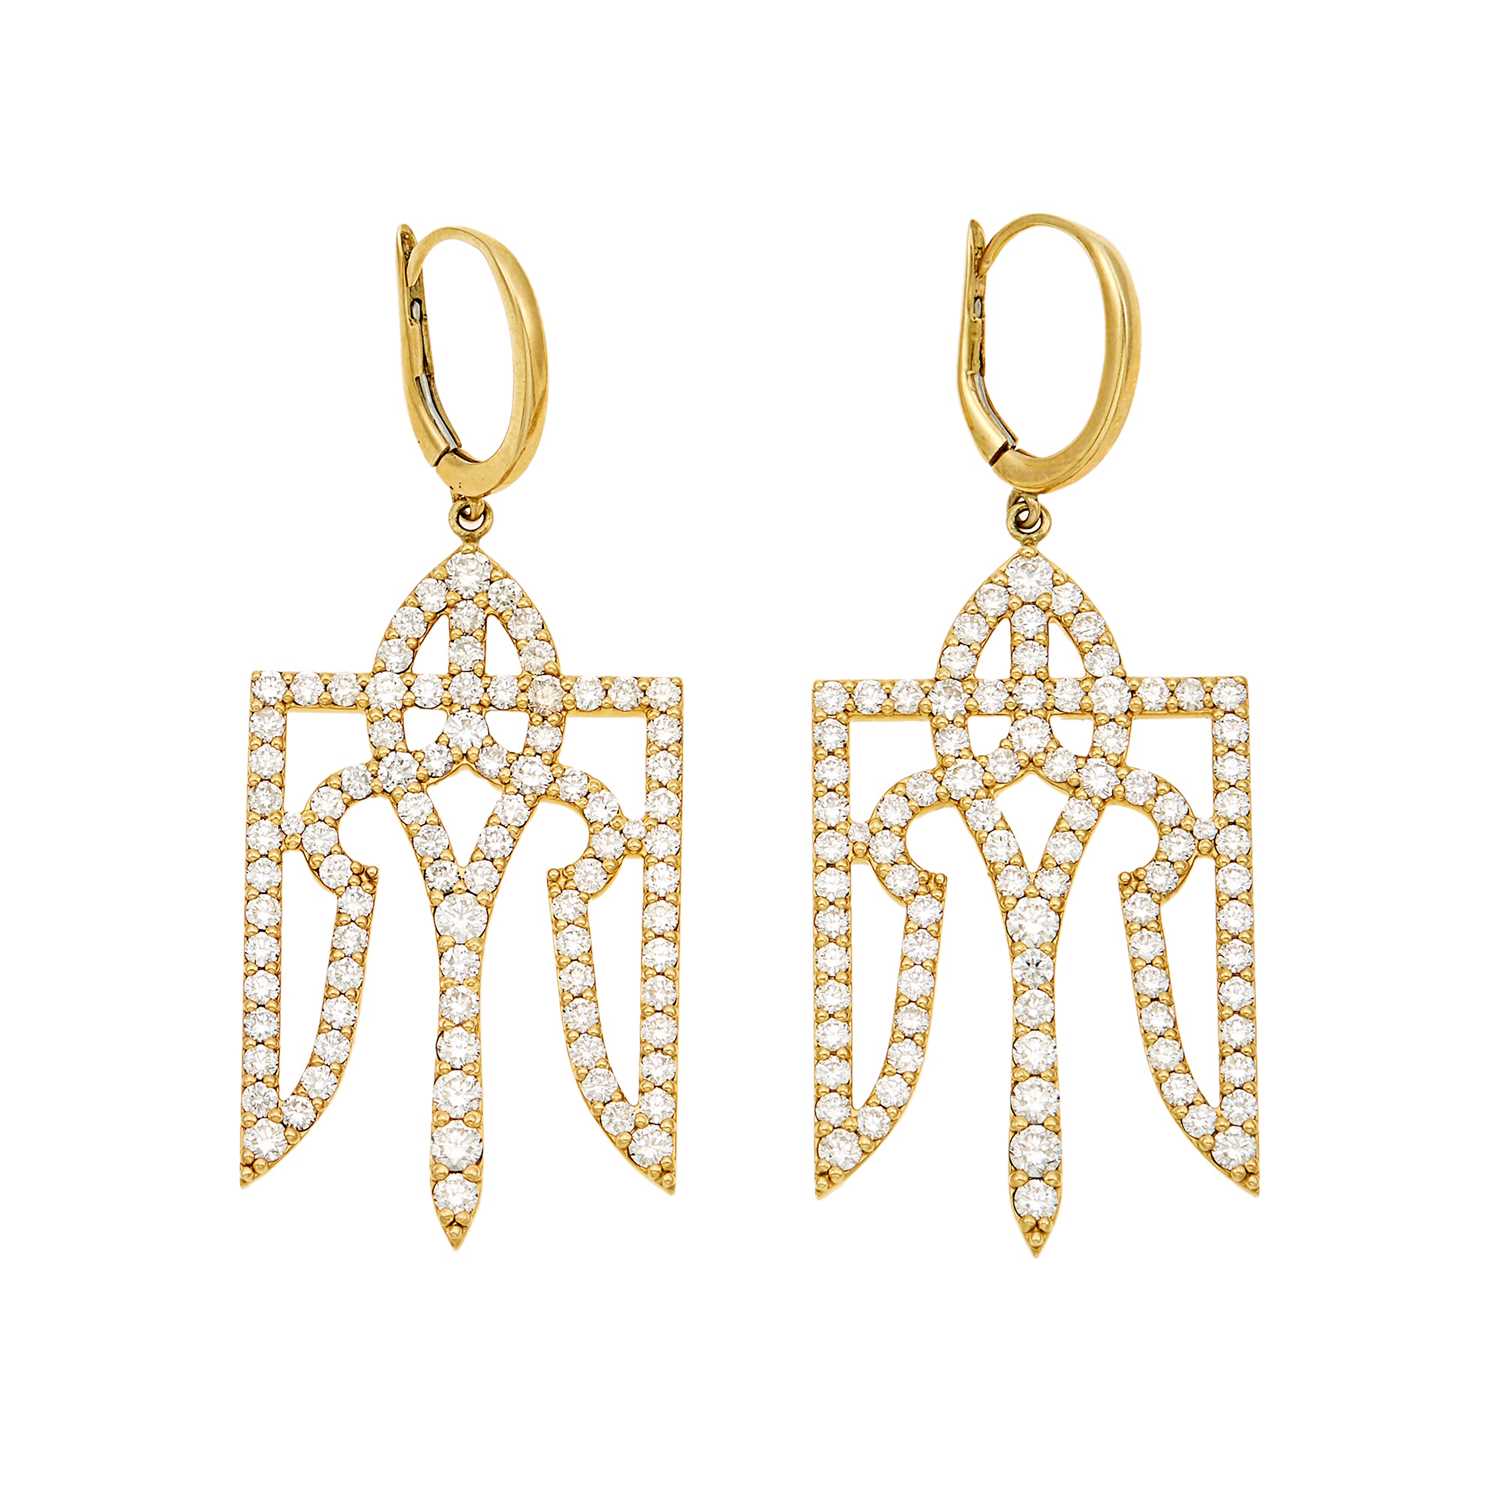 Lot 1039 - Pair of Gold and Diamond Ukrainian Emblem Pendant-Earrings